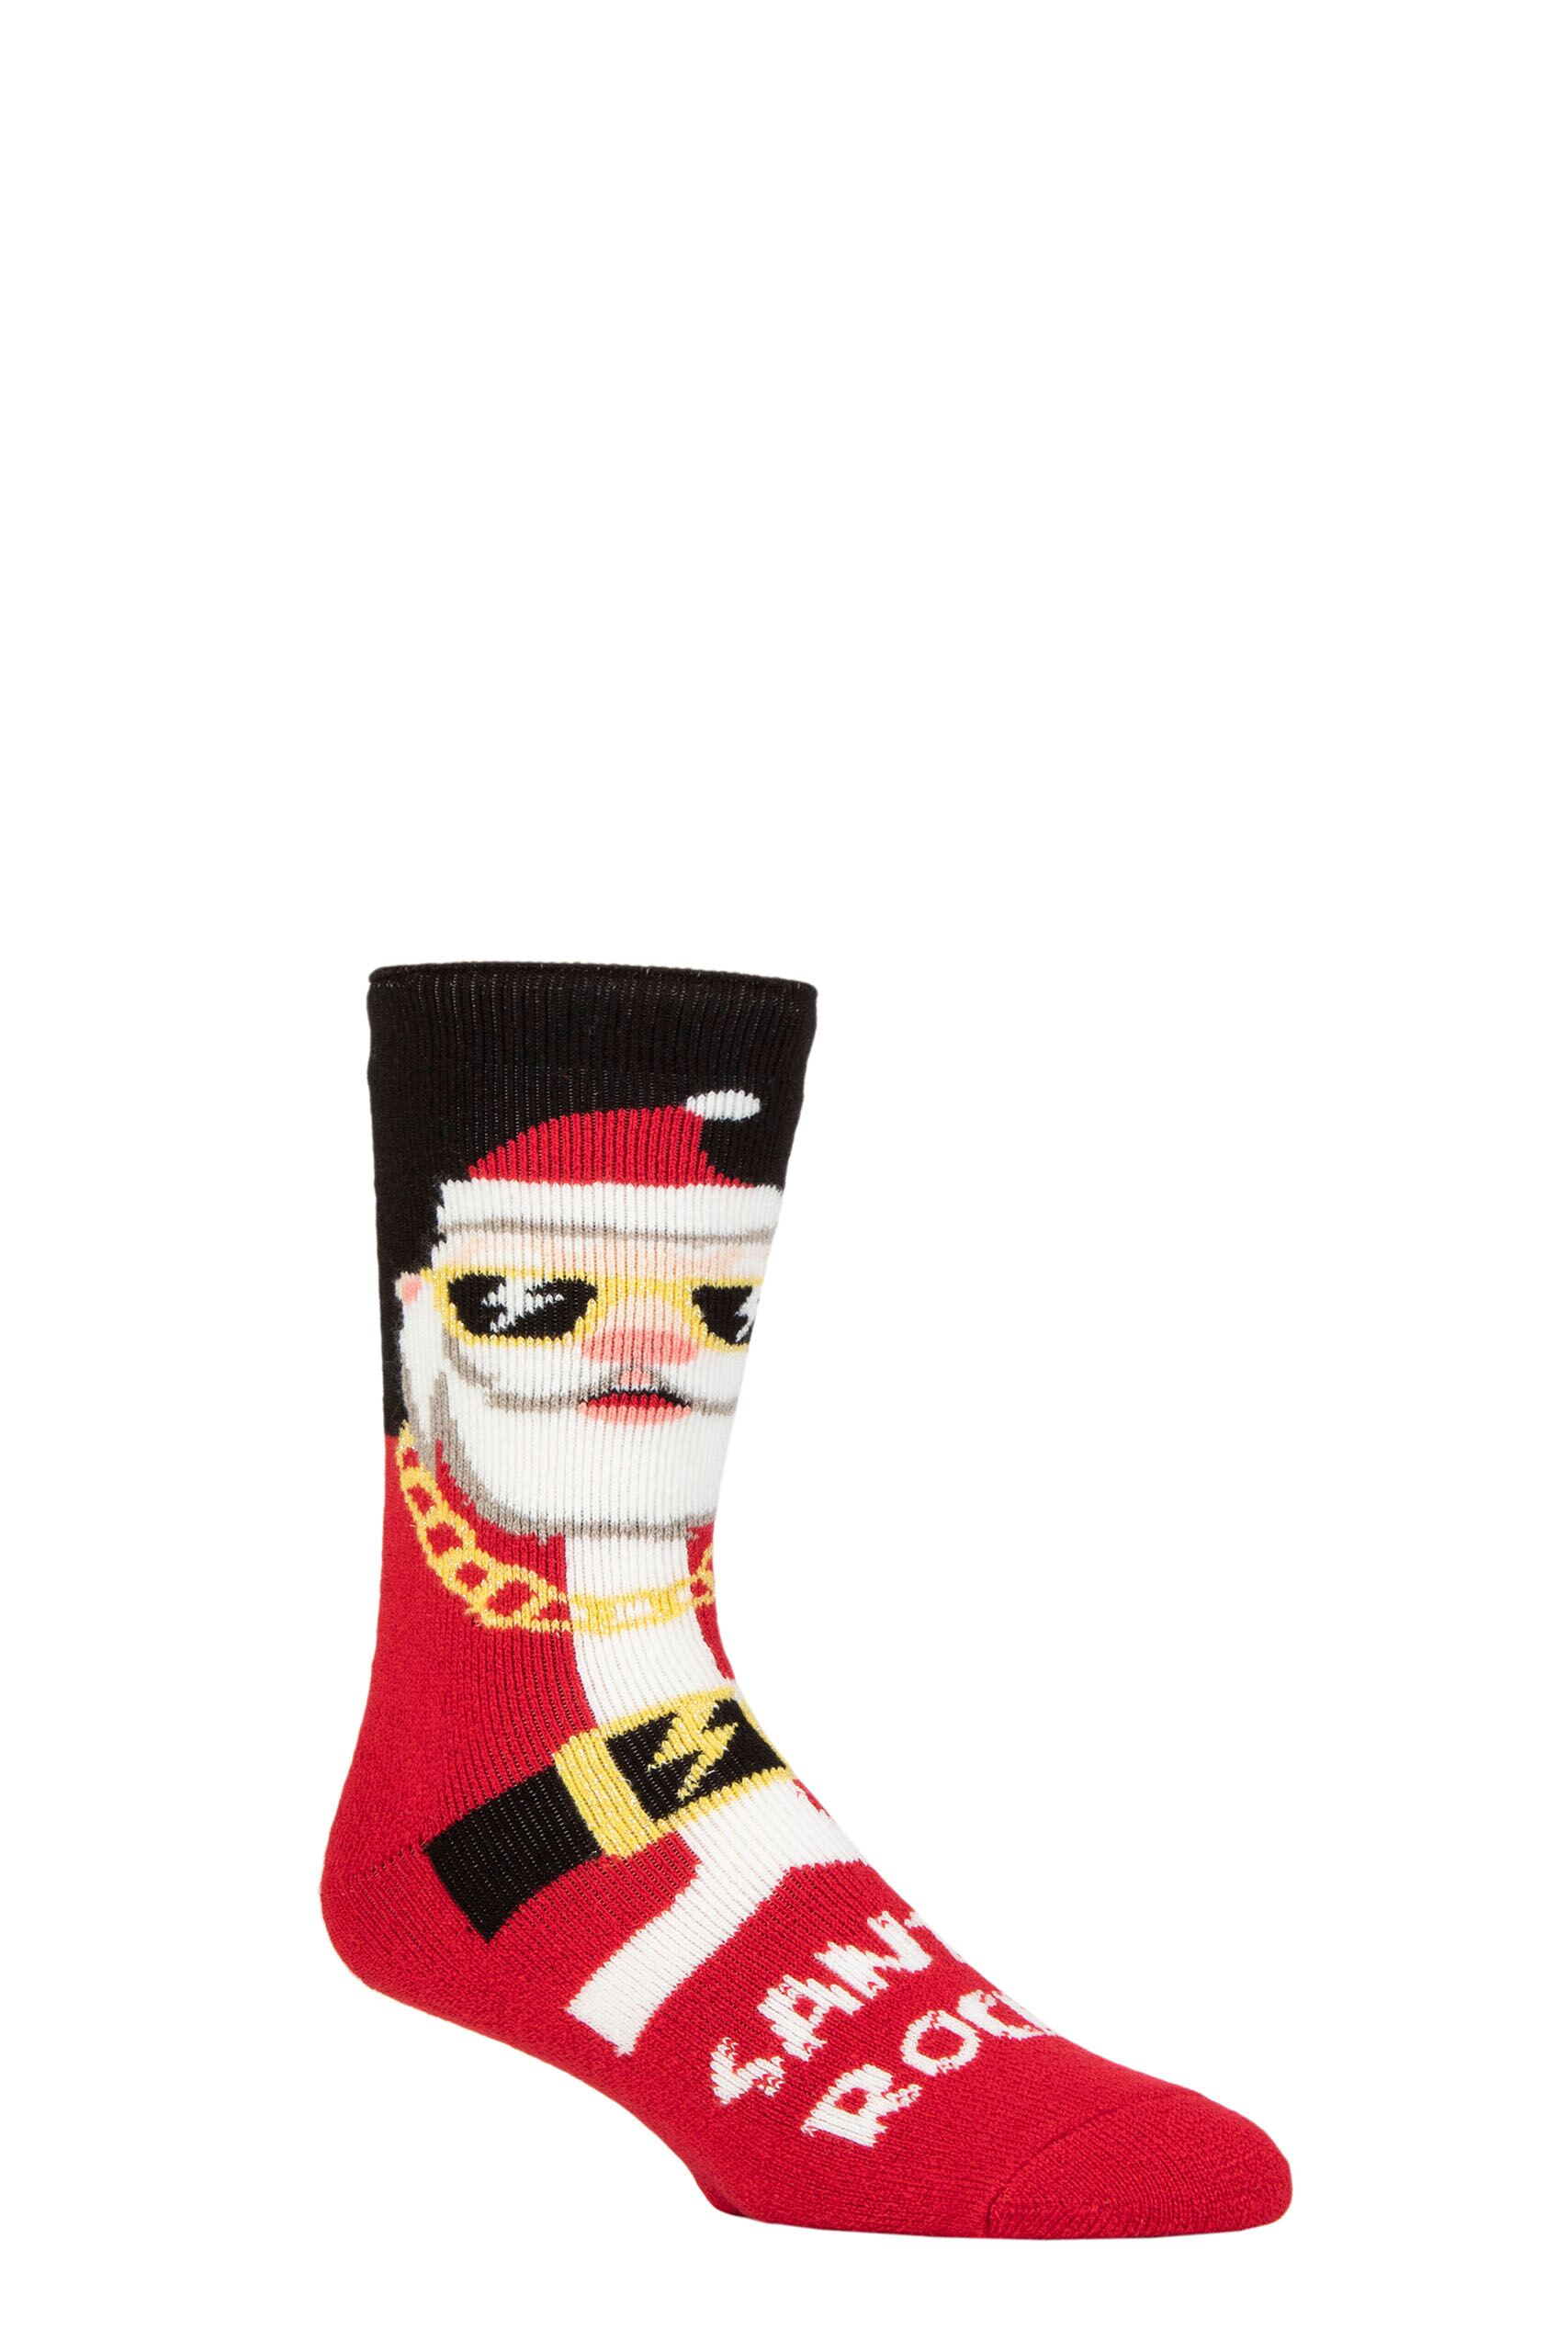 Mens 1 Pair SOCKSHOP Heat Holders 1.6 TOG Lite Christmas Socks Cool Santa 6-11